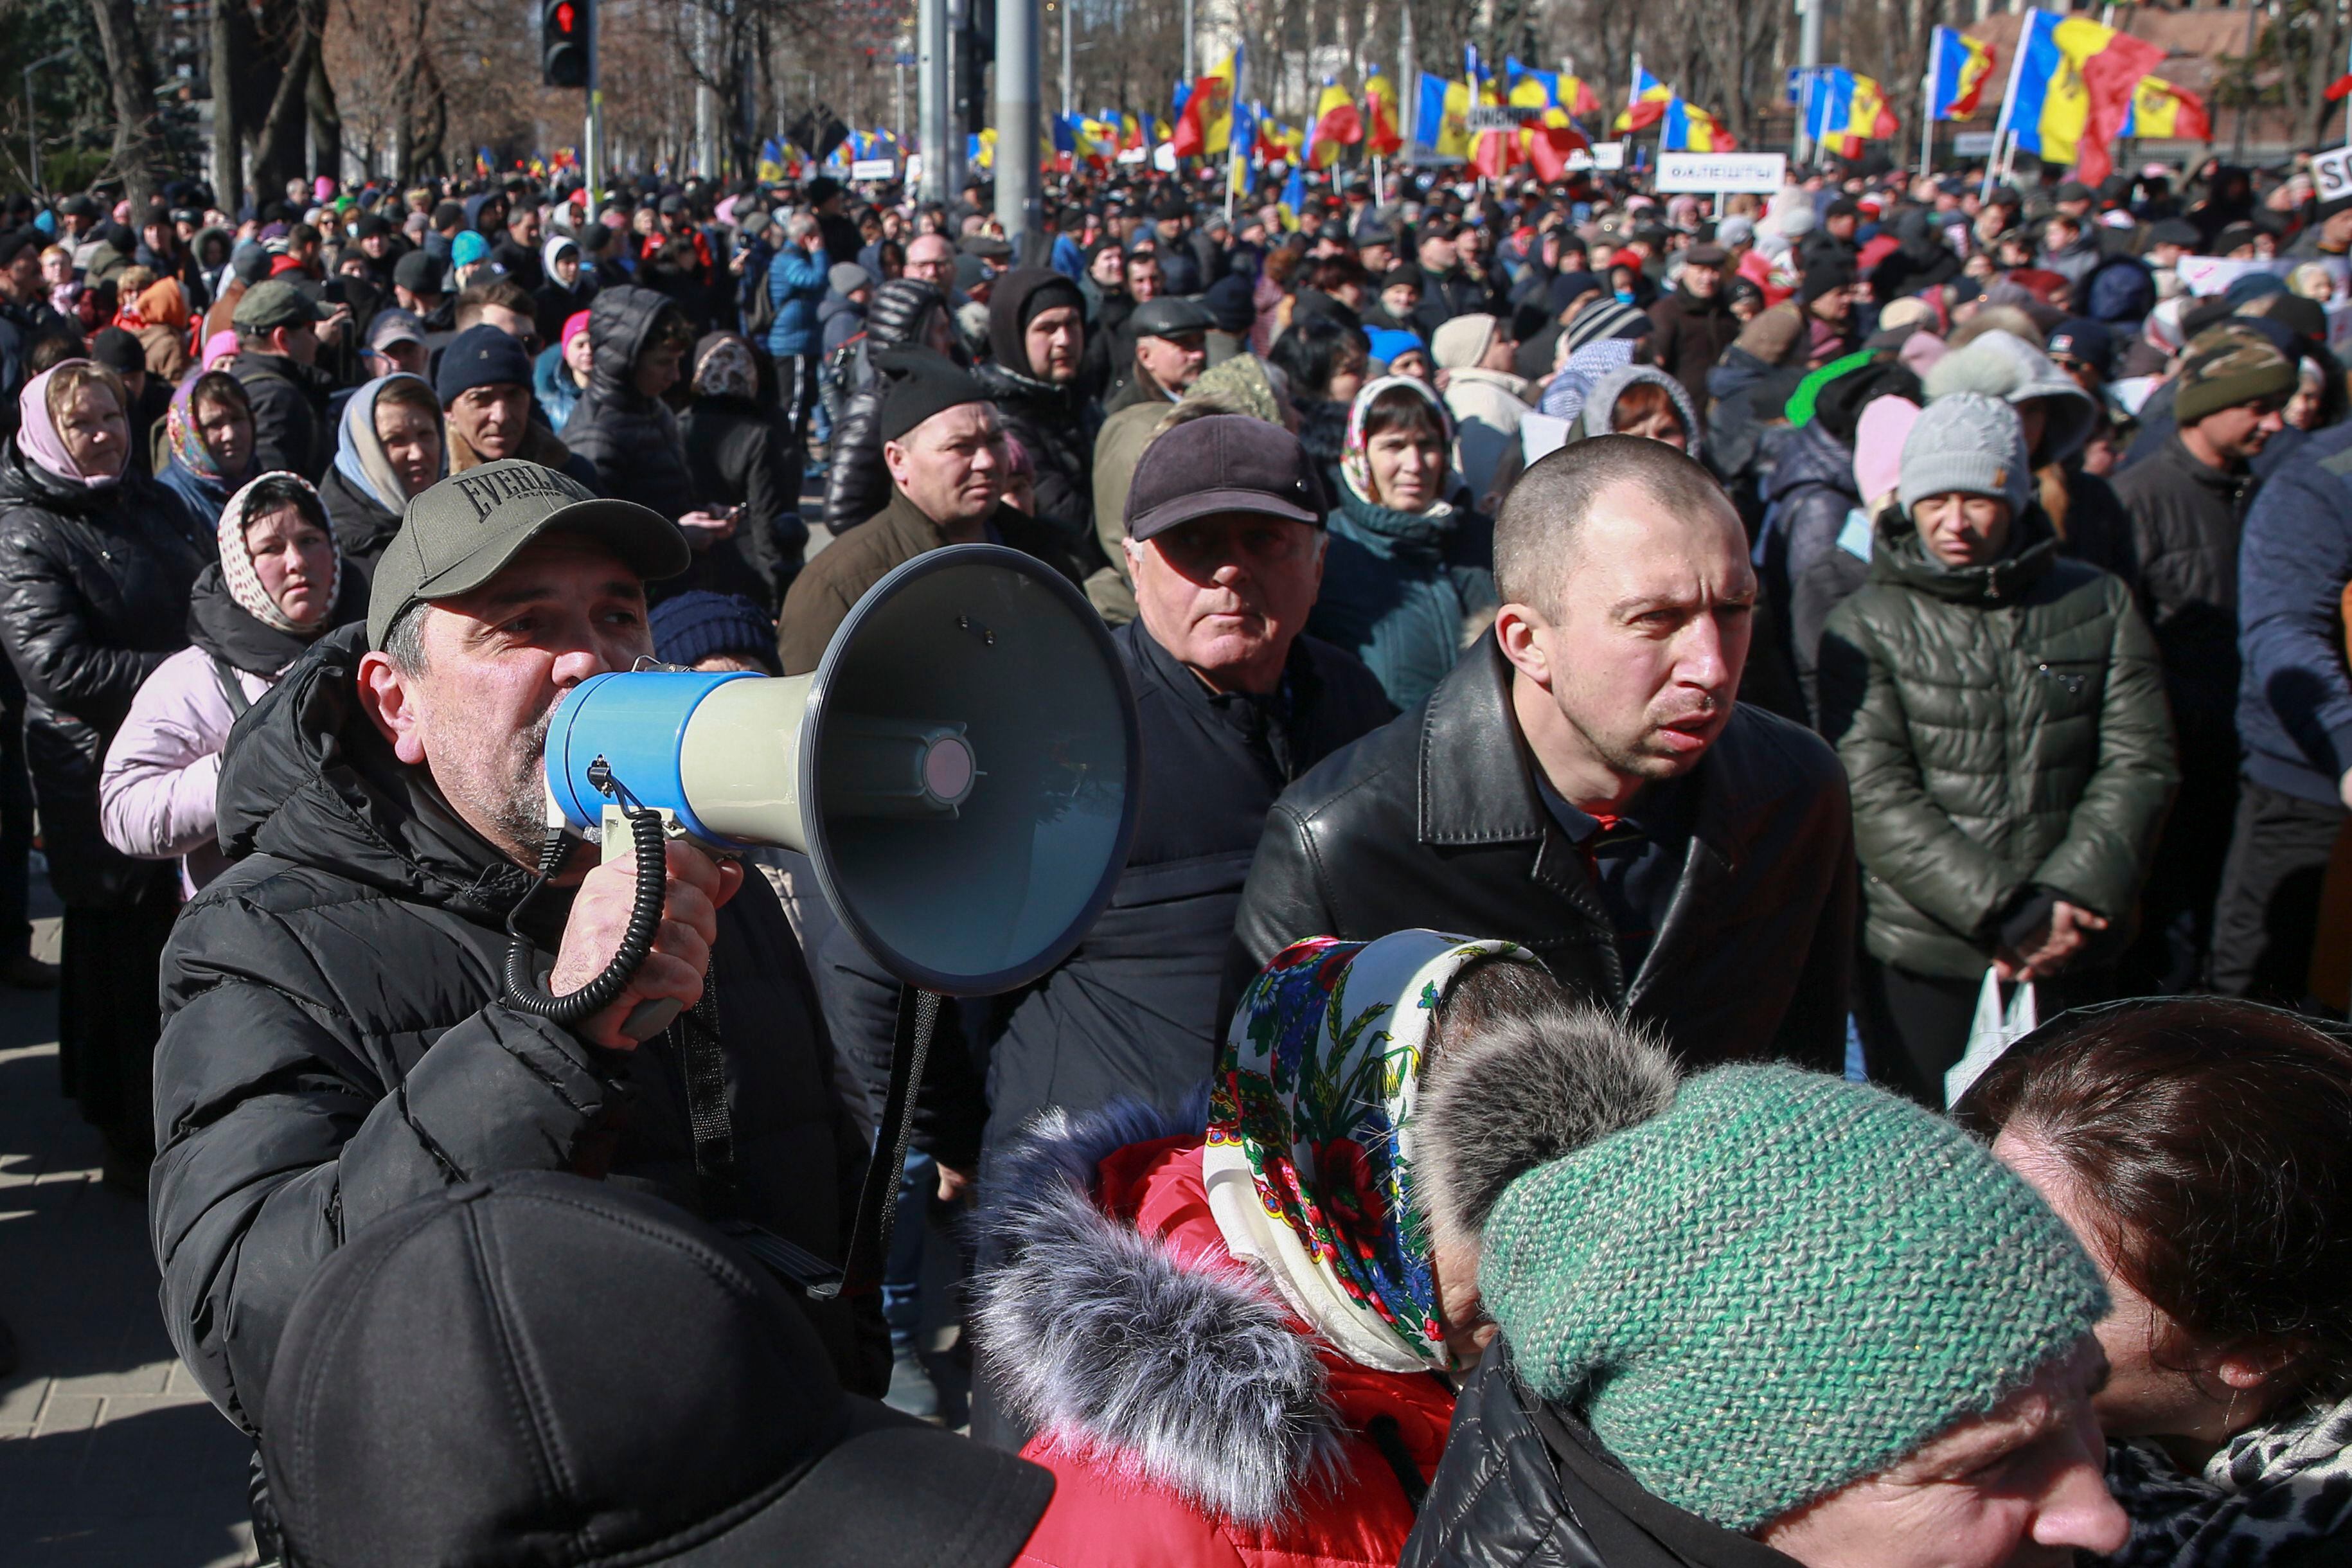 El pasado mes de febrero, Sandu acusó a Rusia de poner en marcha una “guerra híbrida” contra el país para lograr la caída del Gobierno mediante protestas contra las autoridades, unas acusaciones que fueron criticadas desde Moscú. (AP)